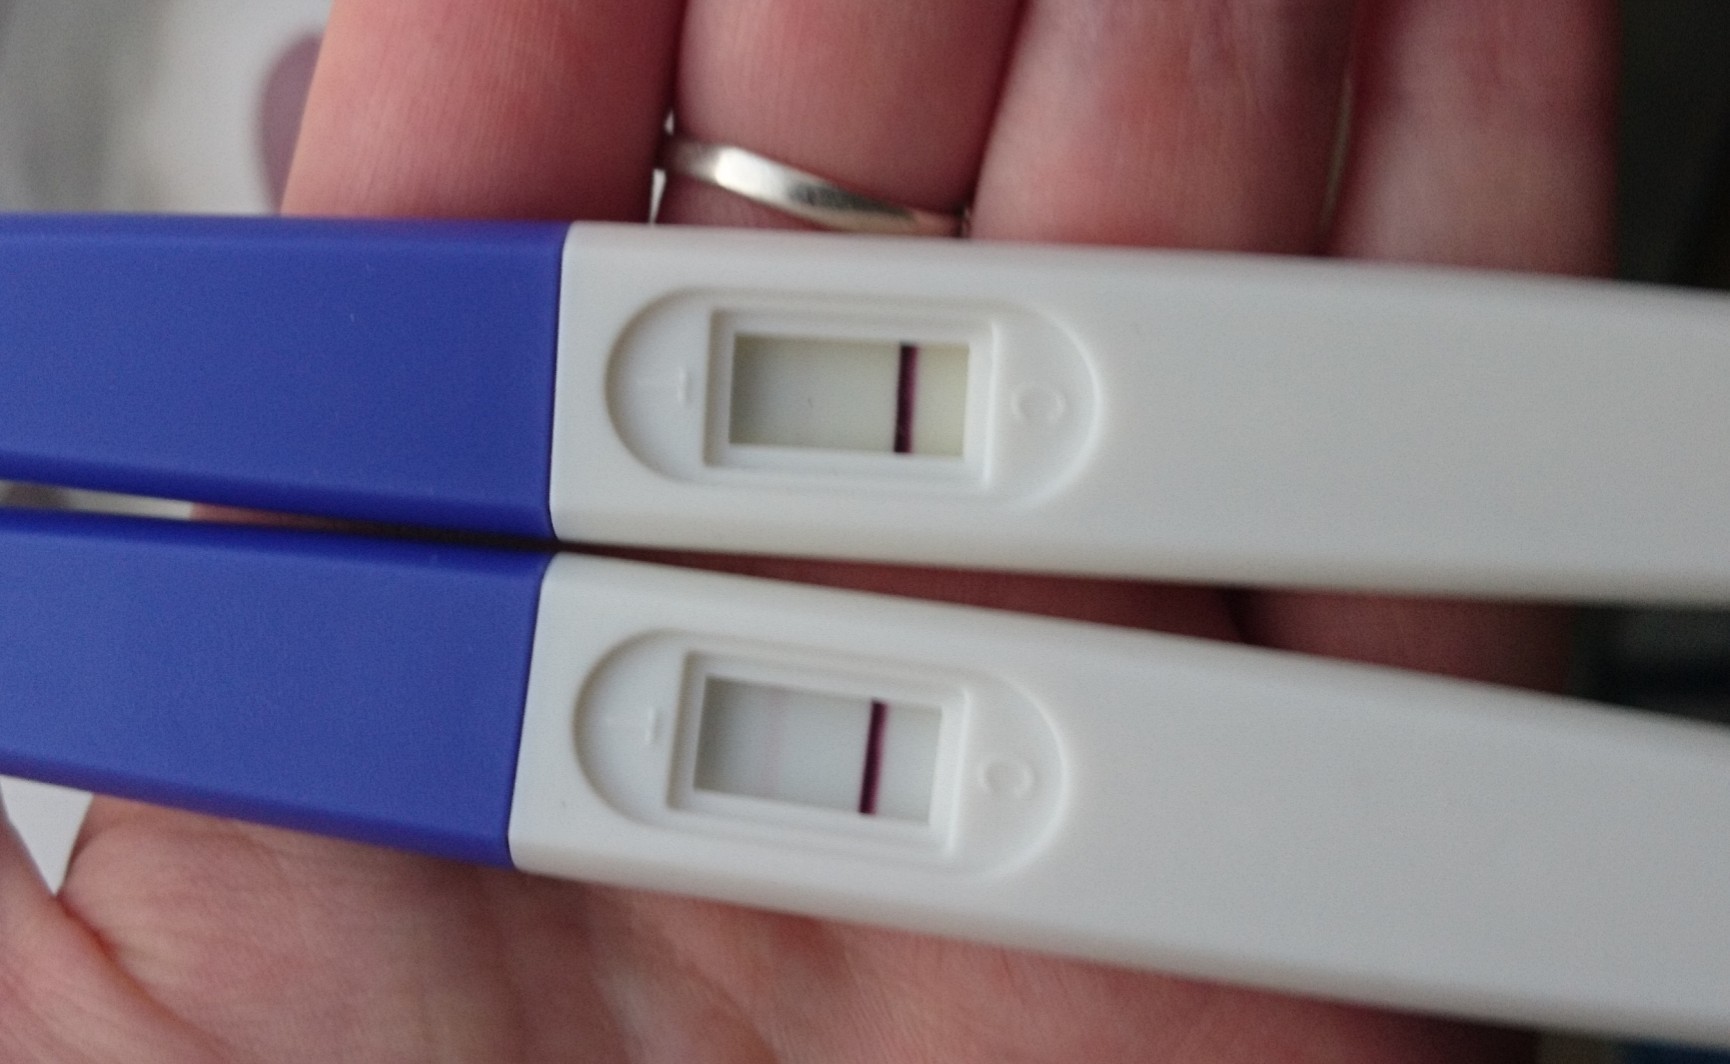 Test 25ui combien dpo - Page : 2 - Tests et symptômes de grossesse ...